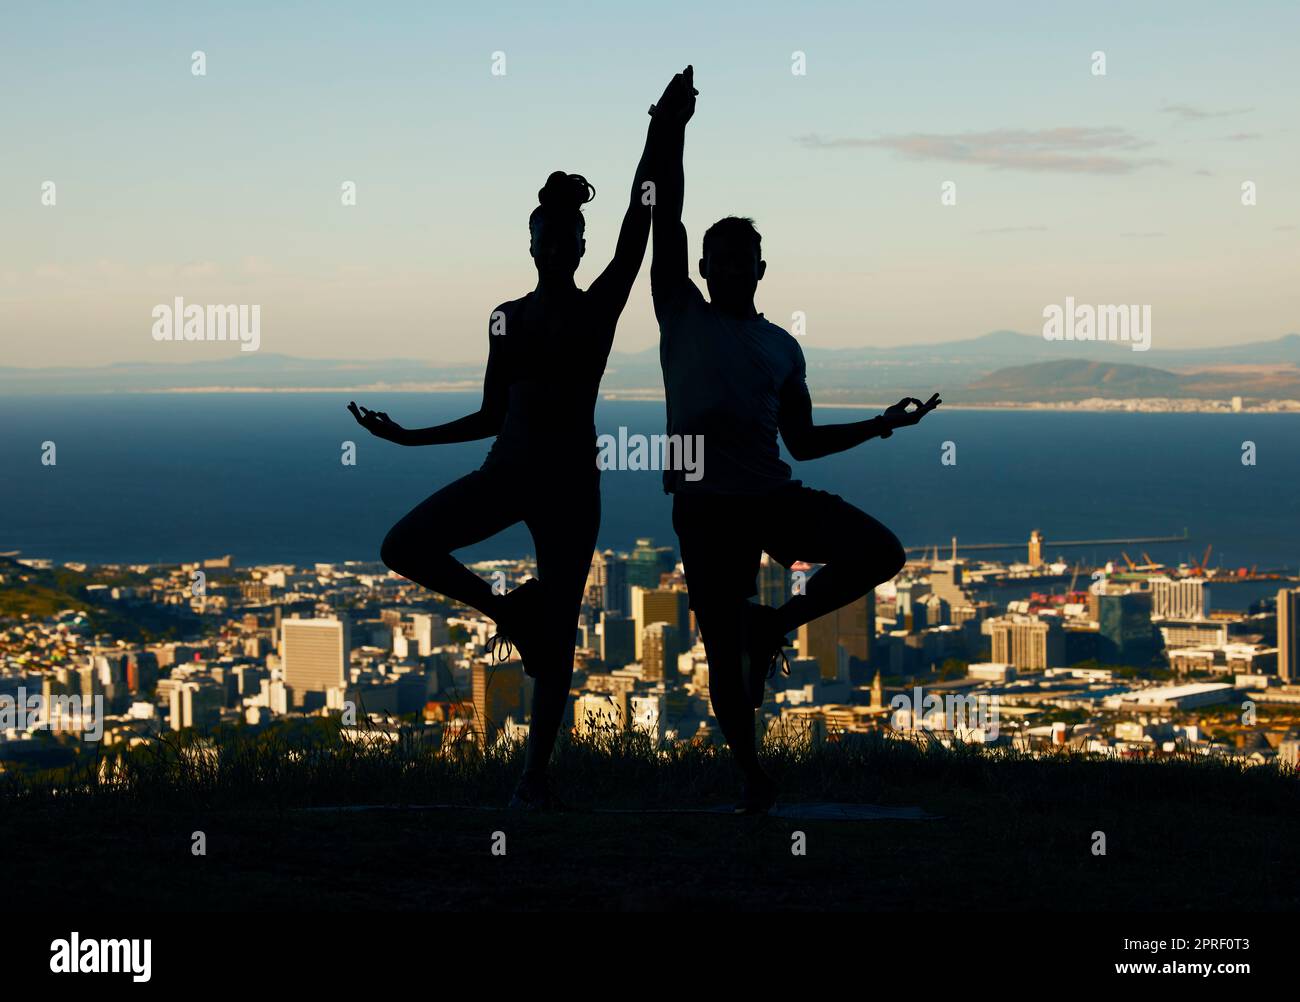 Coppia, silhouette e yoga in forma spirituale e benessere sullo sfondo di una città. Ombra scura della gente nell'equilibrio di esercitazione di meditazione insieme Foto Stock